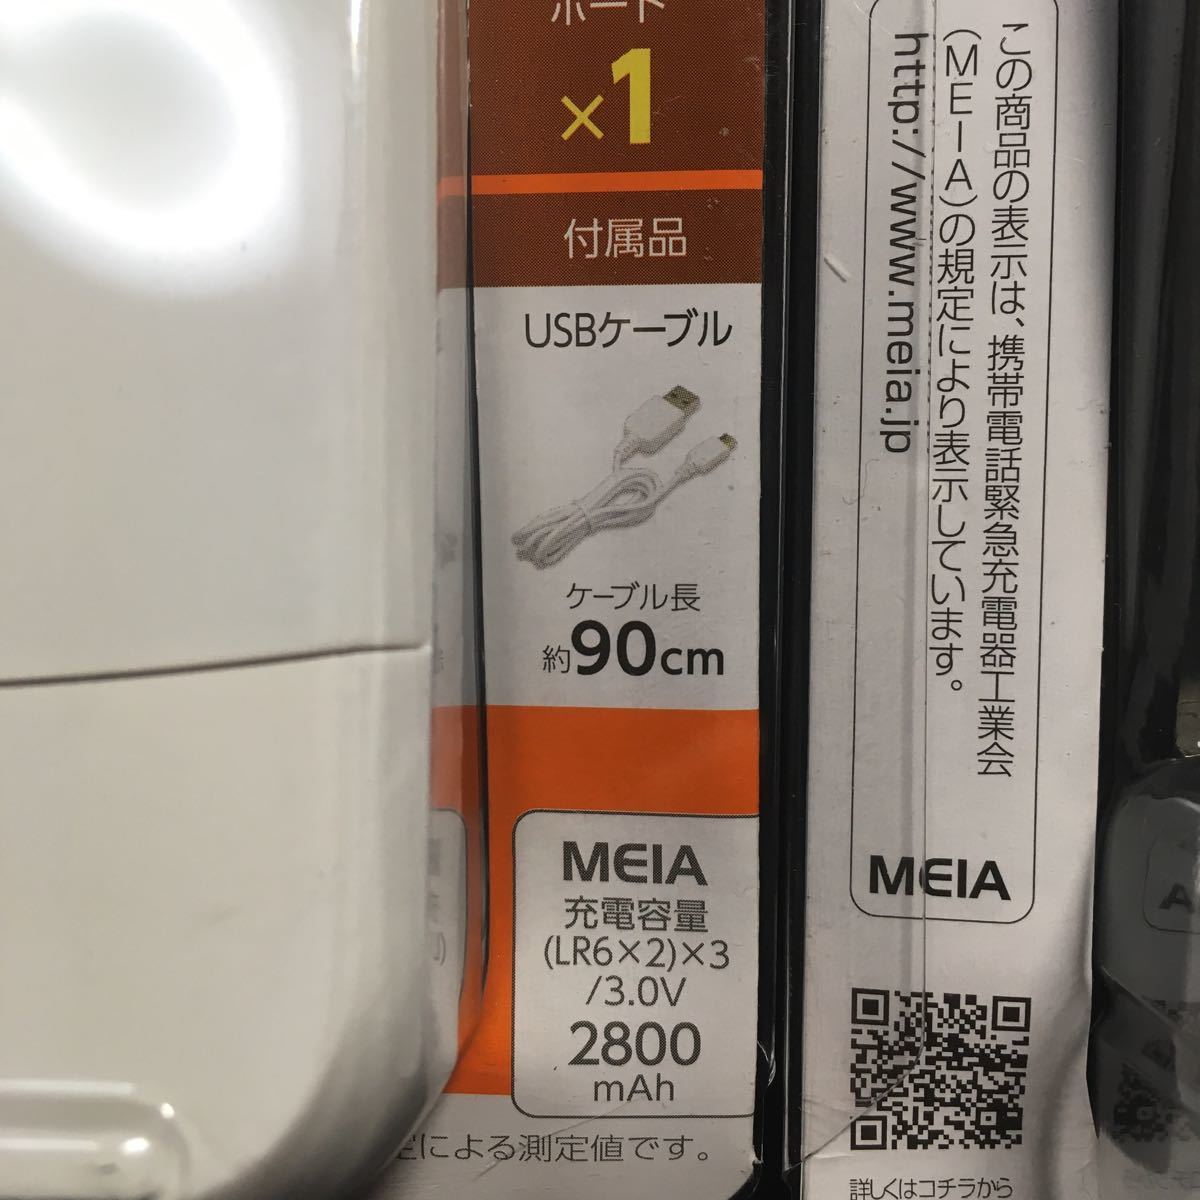  новый товар *2 шт. комплект батарея мобильный аккумулятор +micro USB кабель комплект TD32SW одиночный 3 батарейка . зарядка возможна бедствие меры .! стоимость доставки 520 иен ~